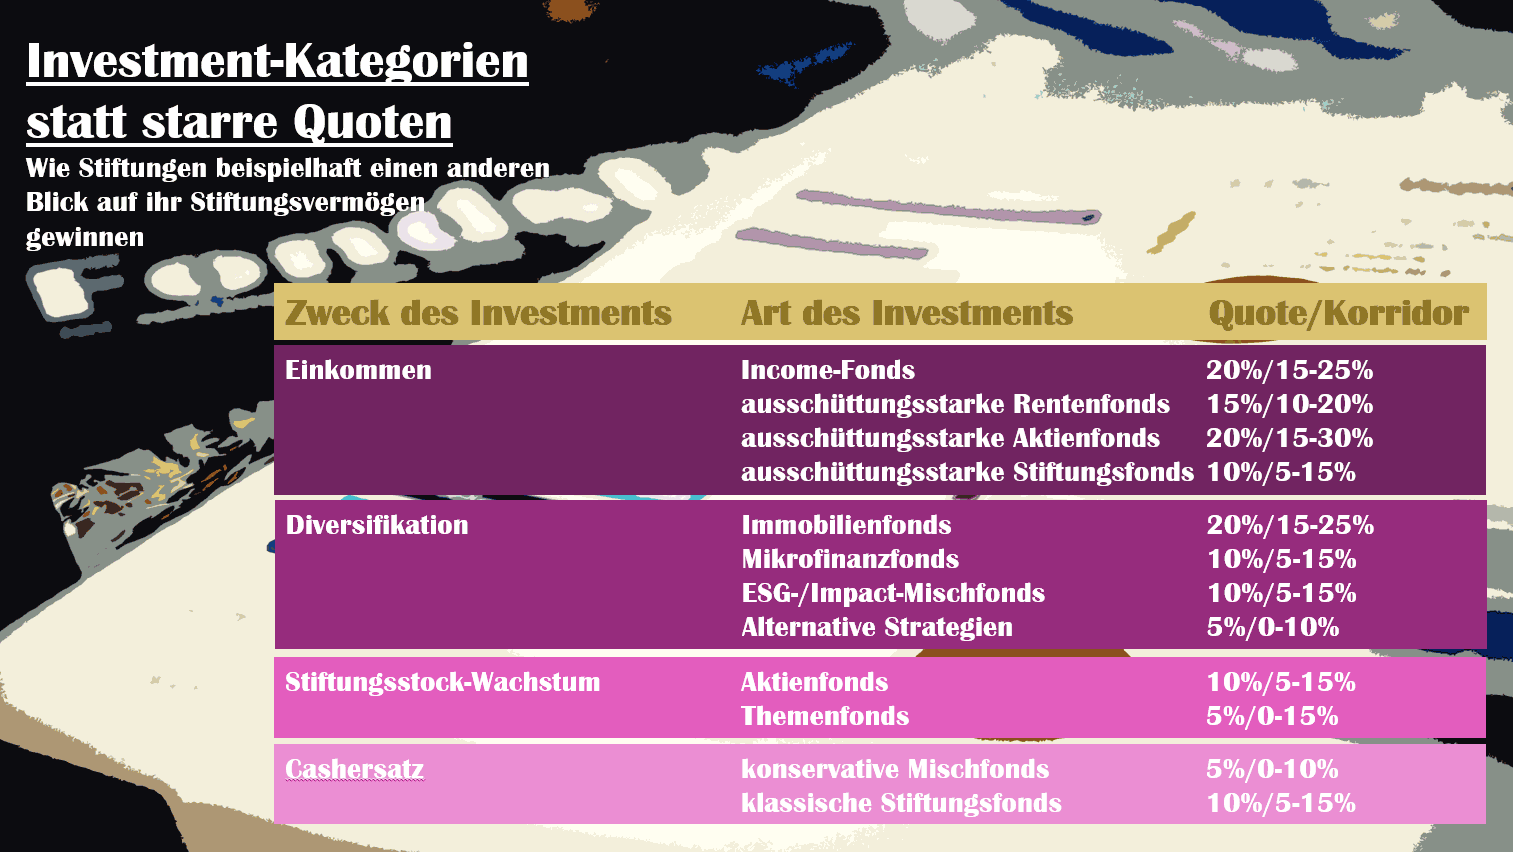 Investment-Kategorien